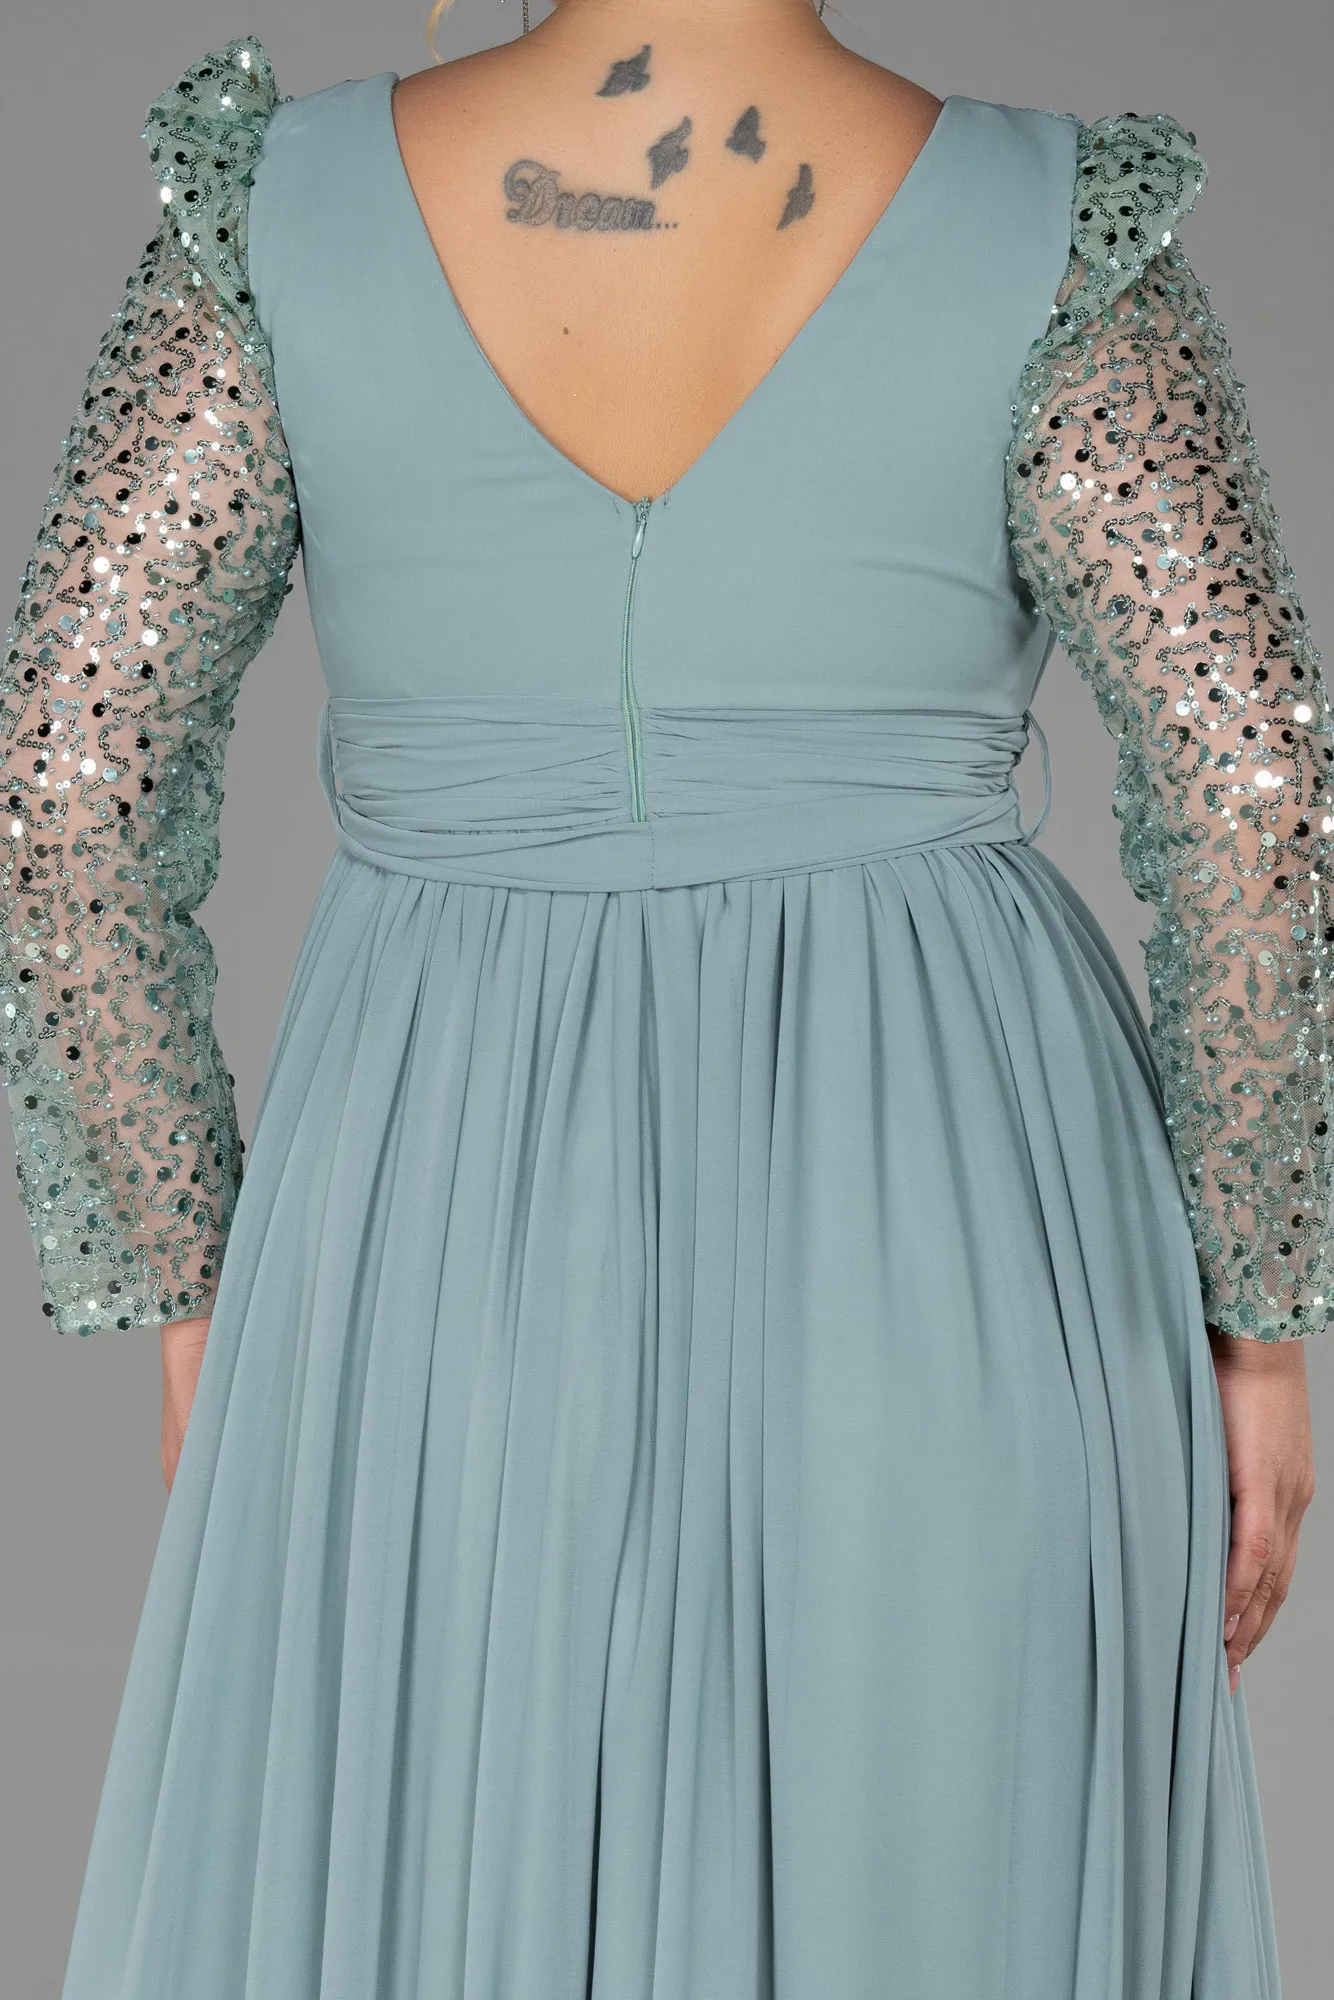 Turquoise-Long Chiffon Plus Size Evening Dress ABU3186